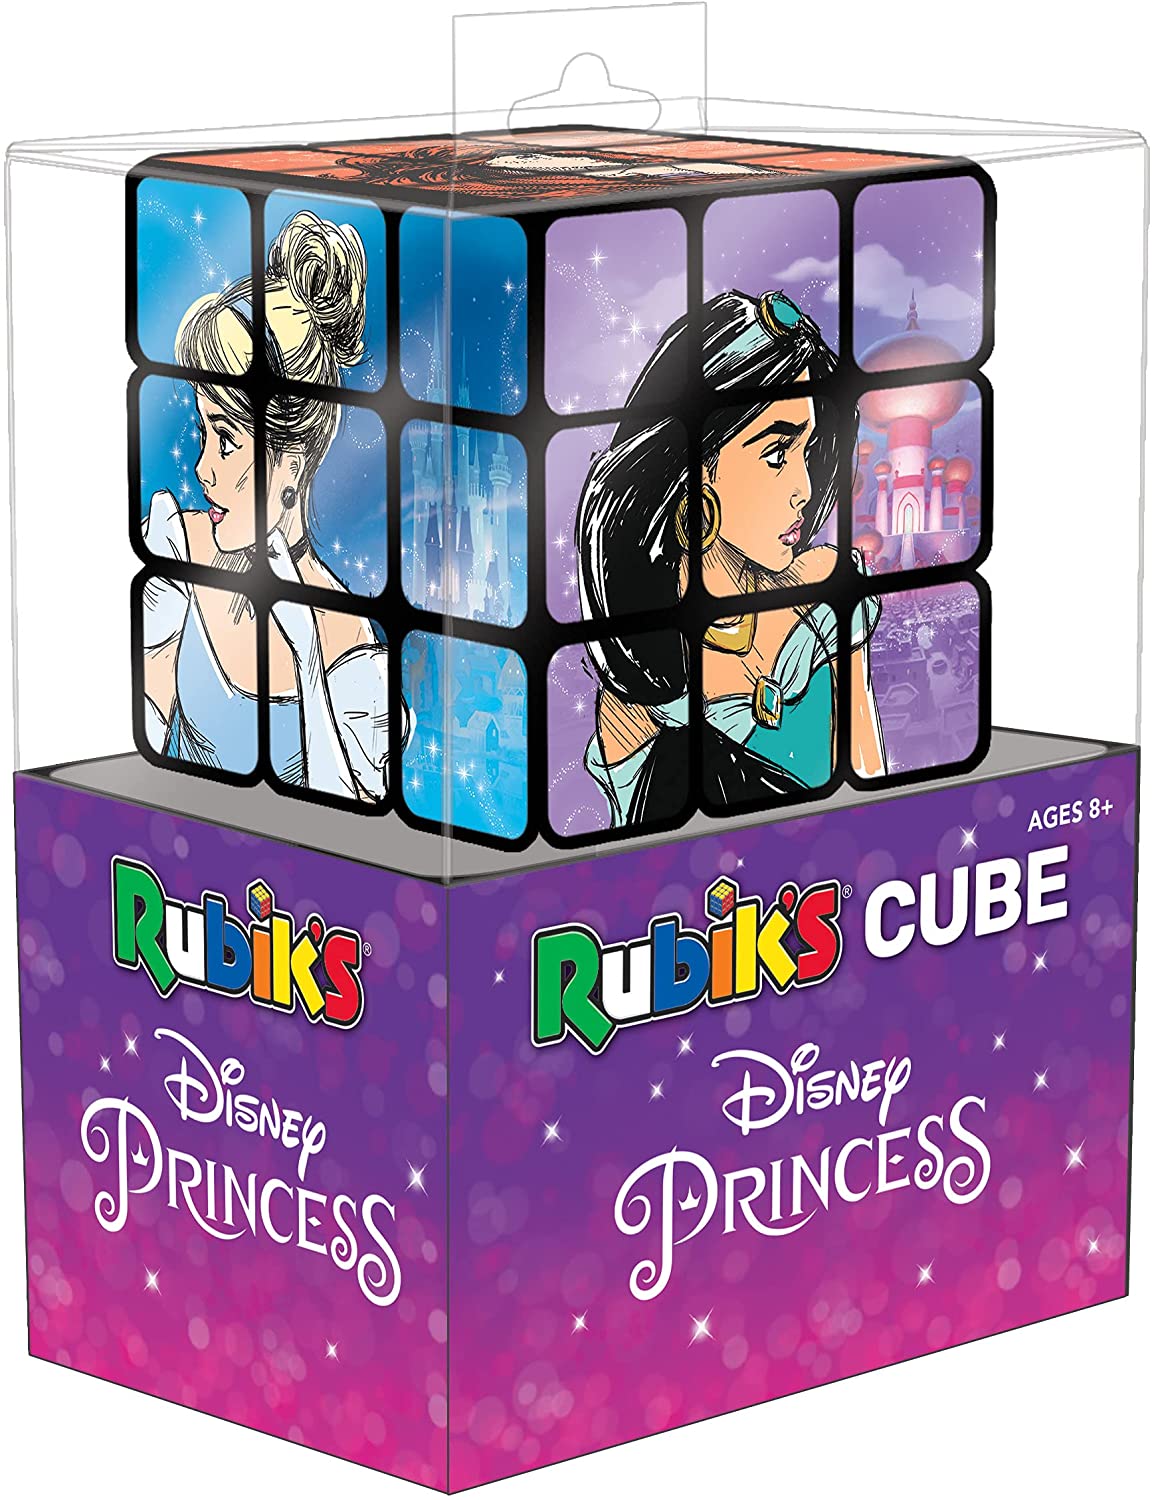 Rubik's Cube: Disney Princess